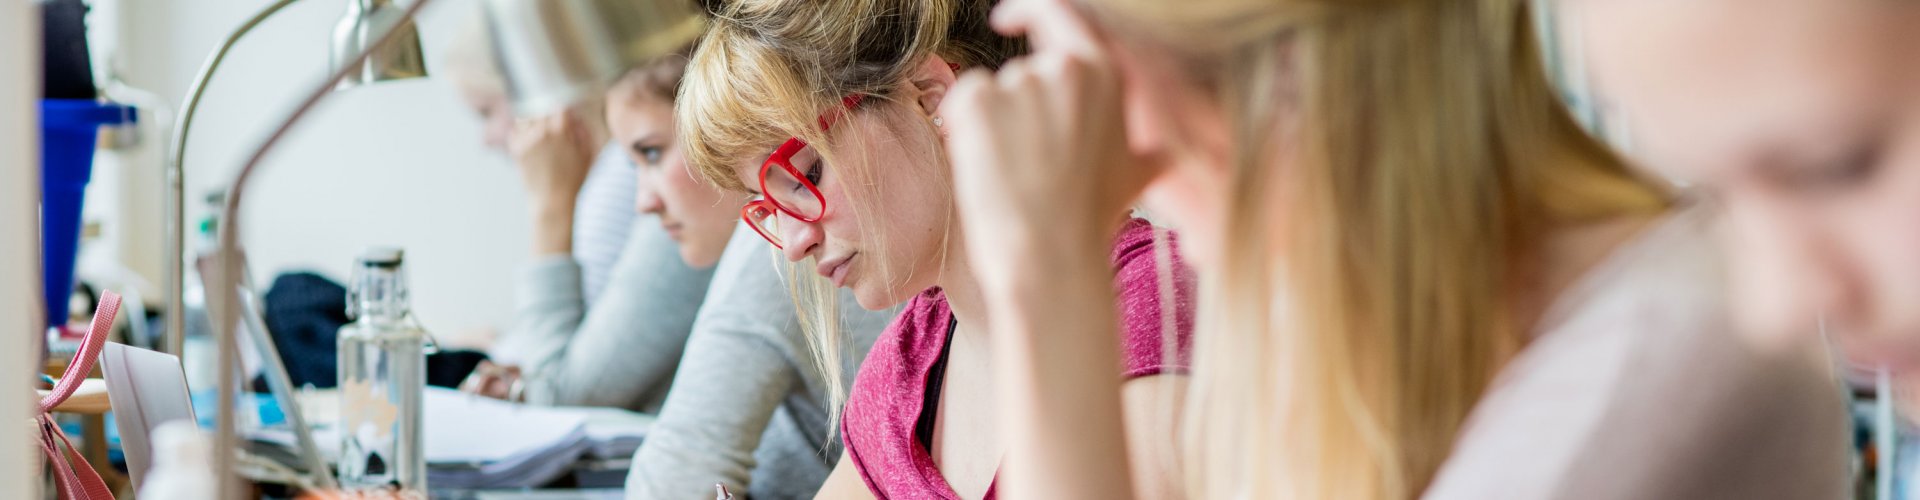 Mehrere Studierende, die in einer Reihe an einem langen Tisch sitzen und über Bücher gebeugt sind oder am Laptop arbeiten. Einige sind unscharf zu erkennen, den Bildmittelpunkt bildet eine blonde Frau mit auffällig roter Brille.